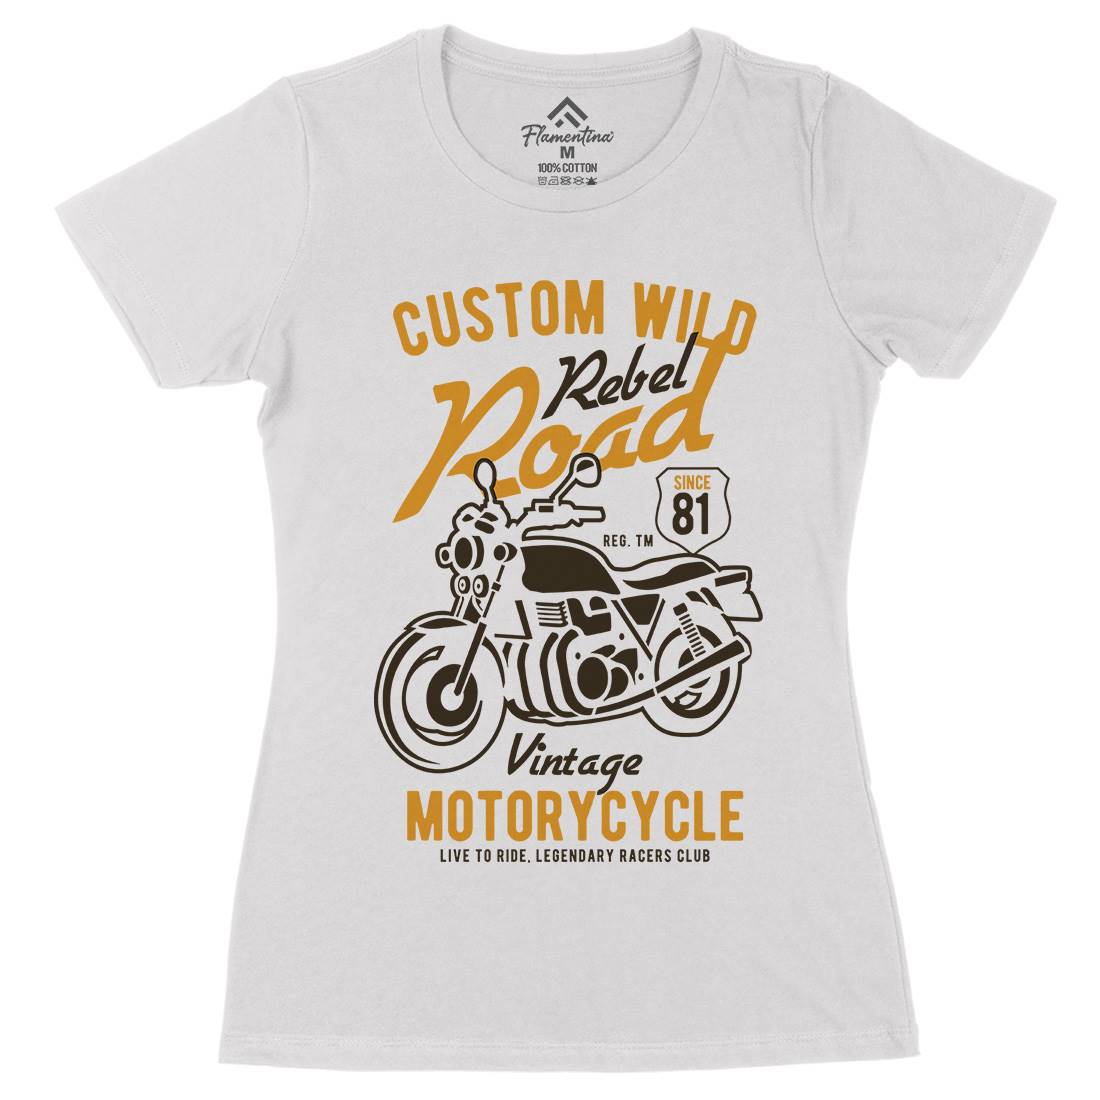 Custom Wild Womens Organic Crew Neck T-Shirt Motorcycles B399